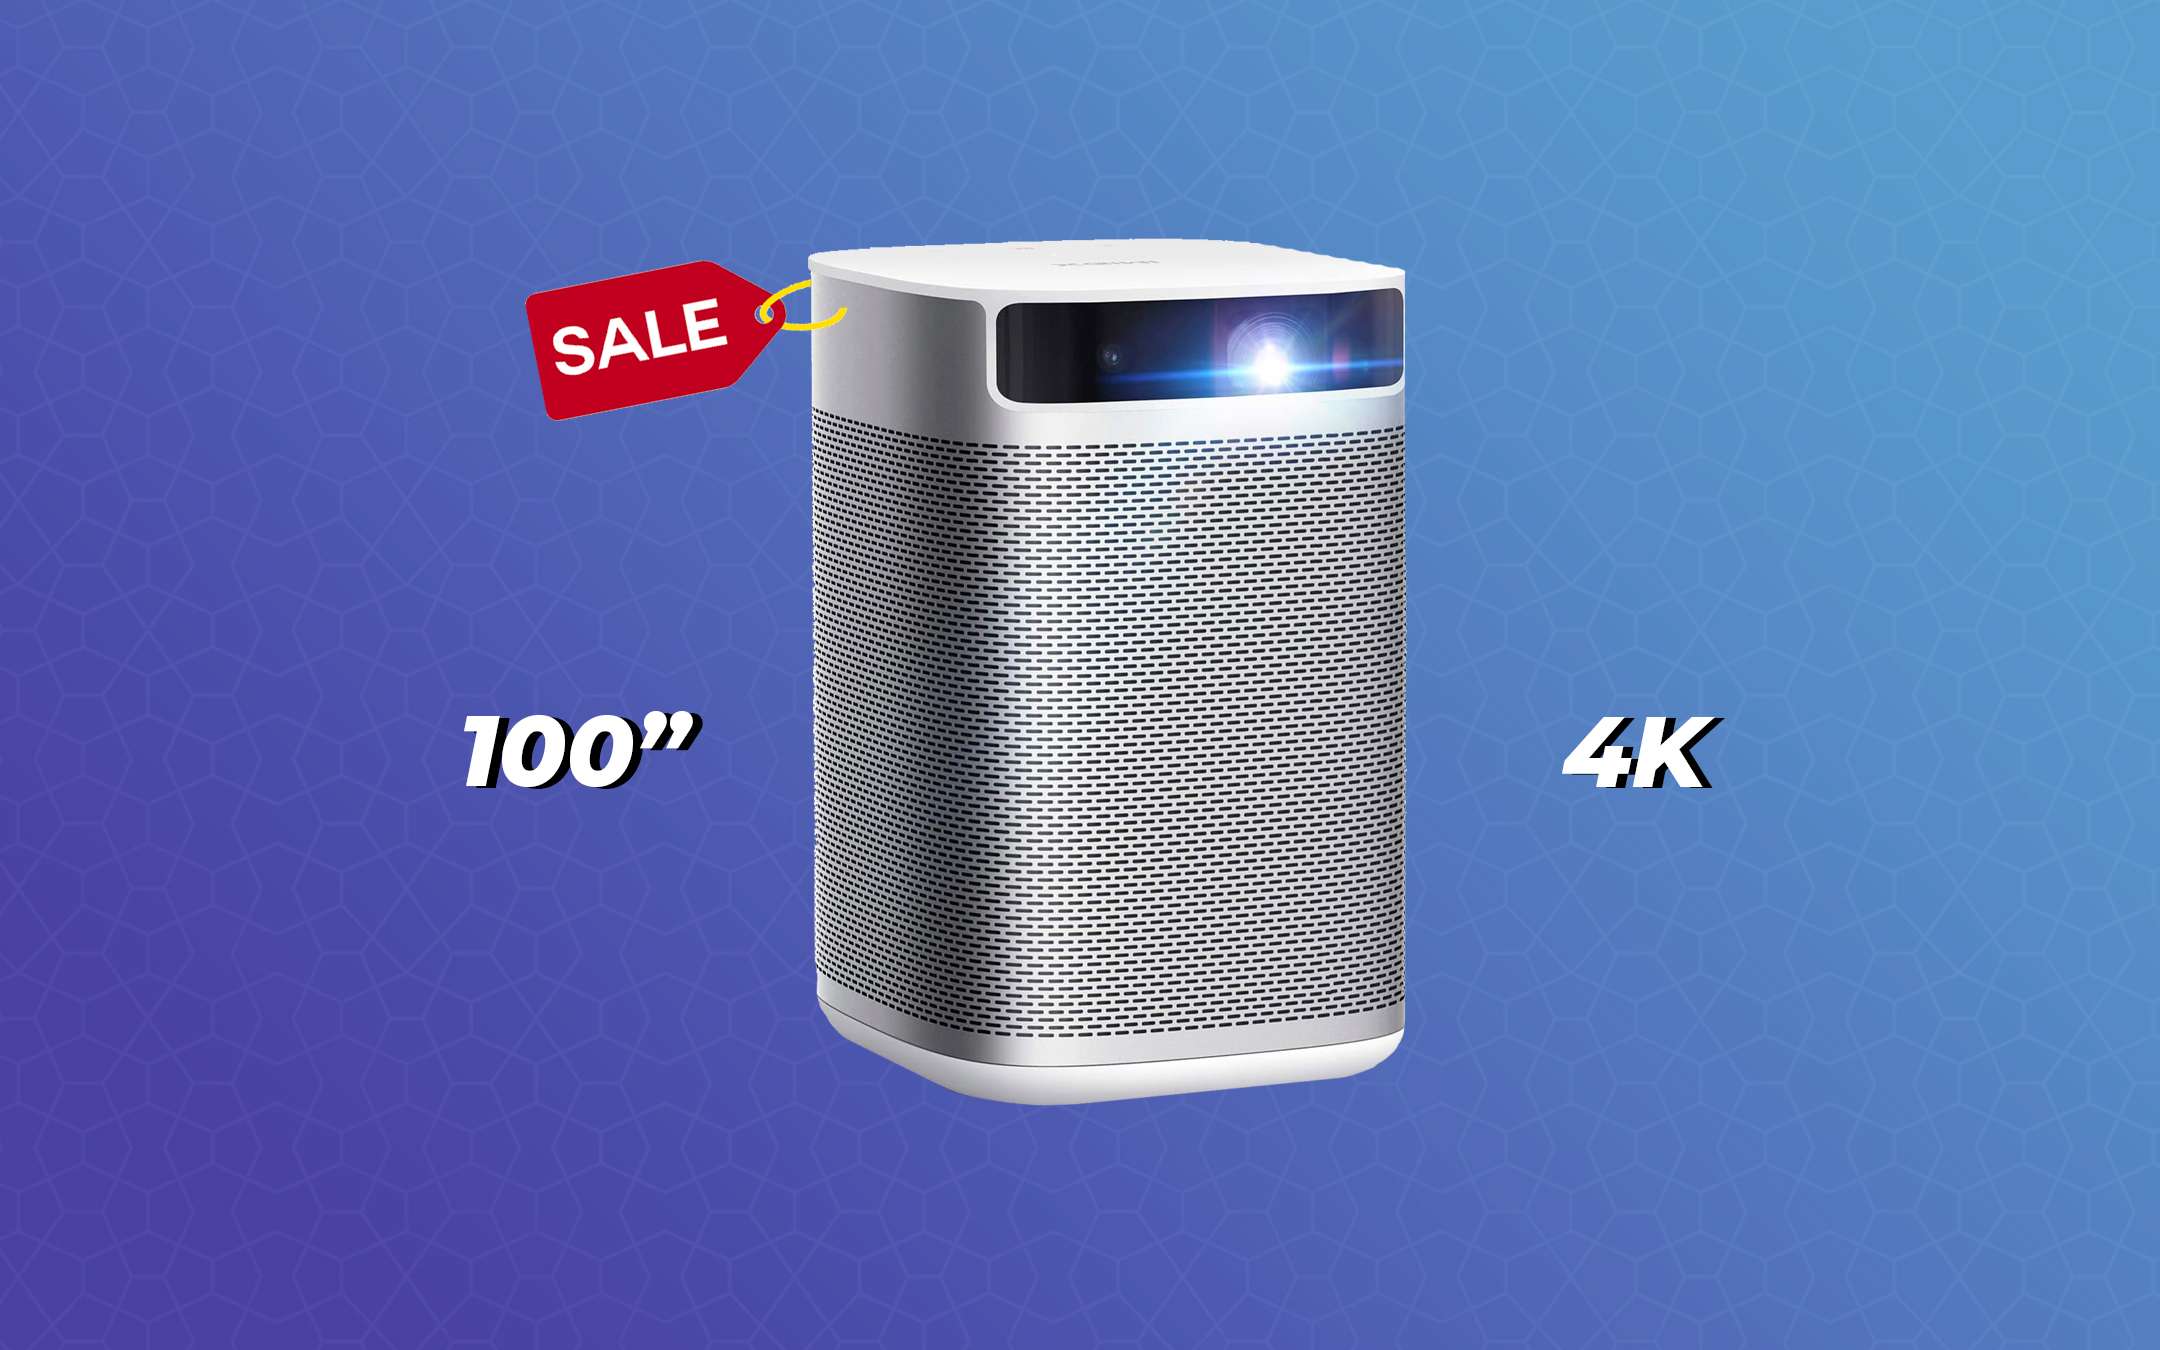 Proiettore Xiaomi da 100 pollici: 60€ di sconto con questo coupon